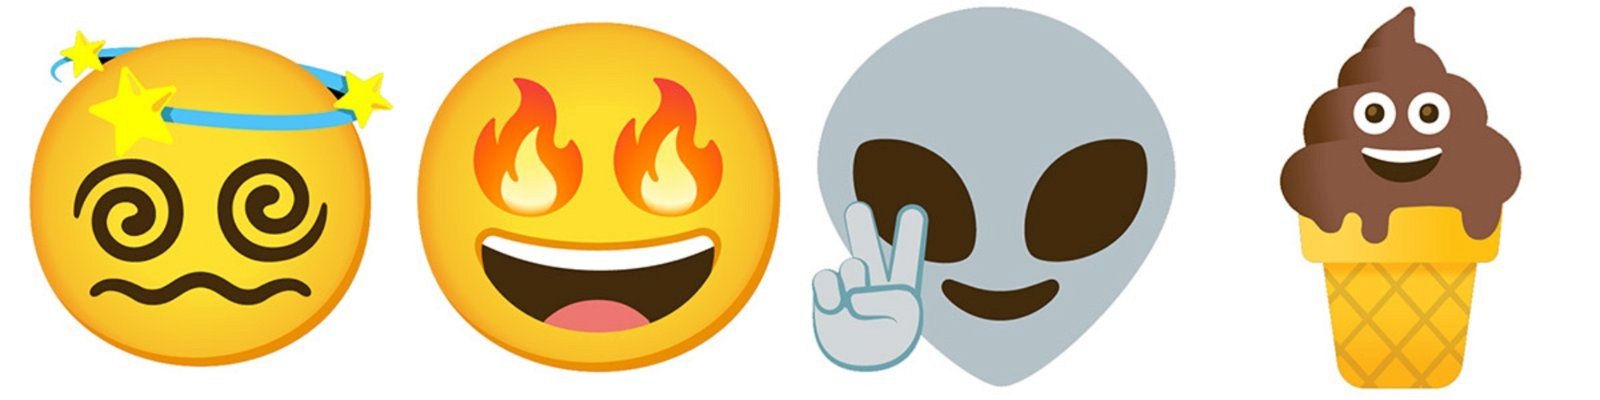 emojis combinados de Gboard 8